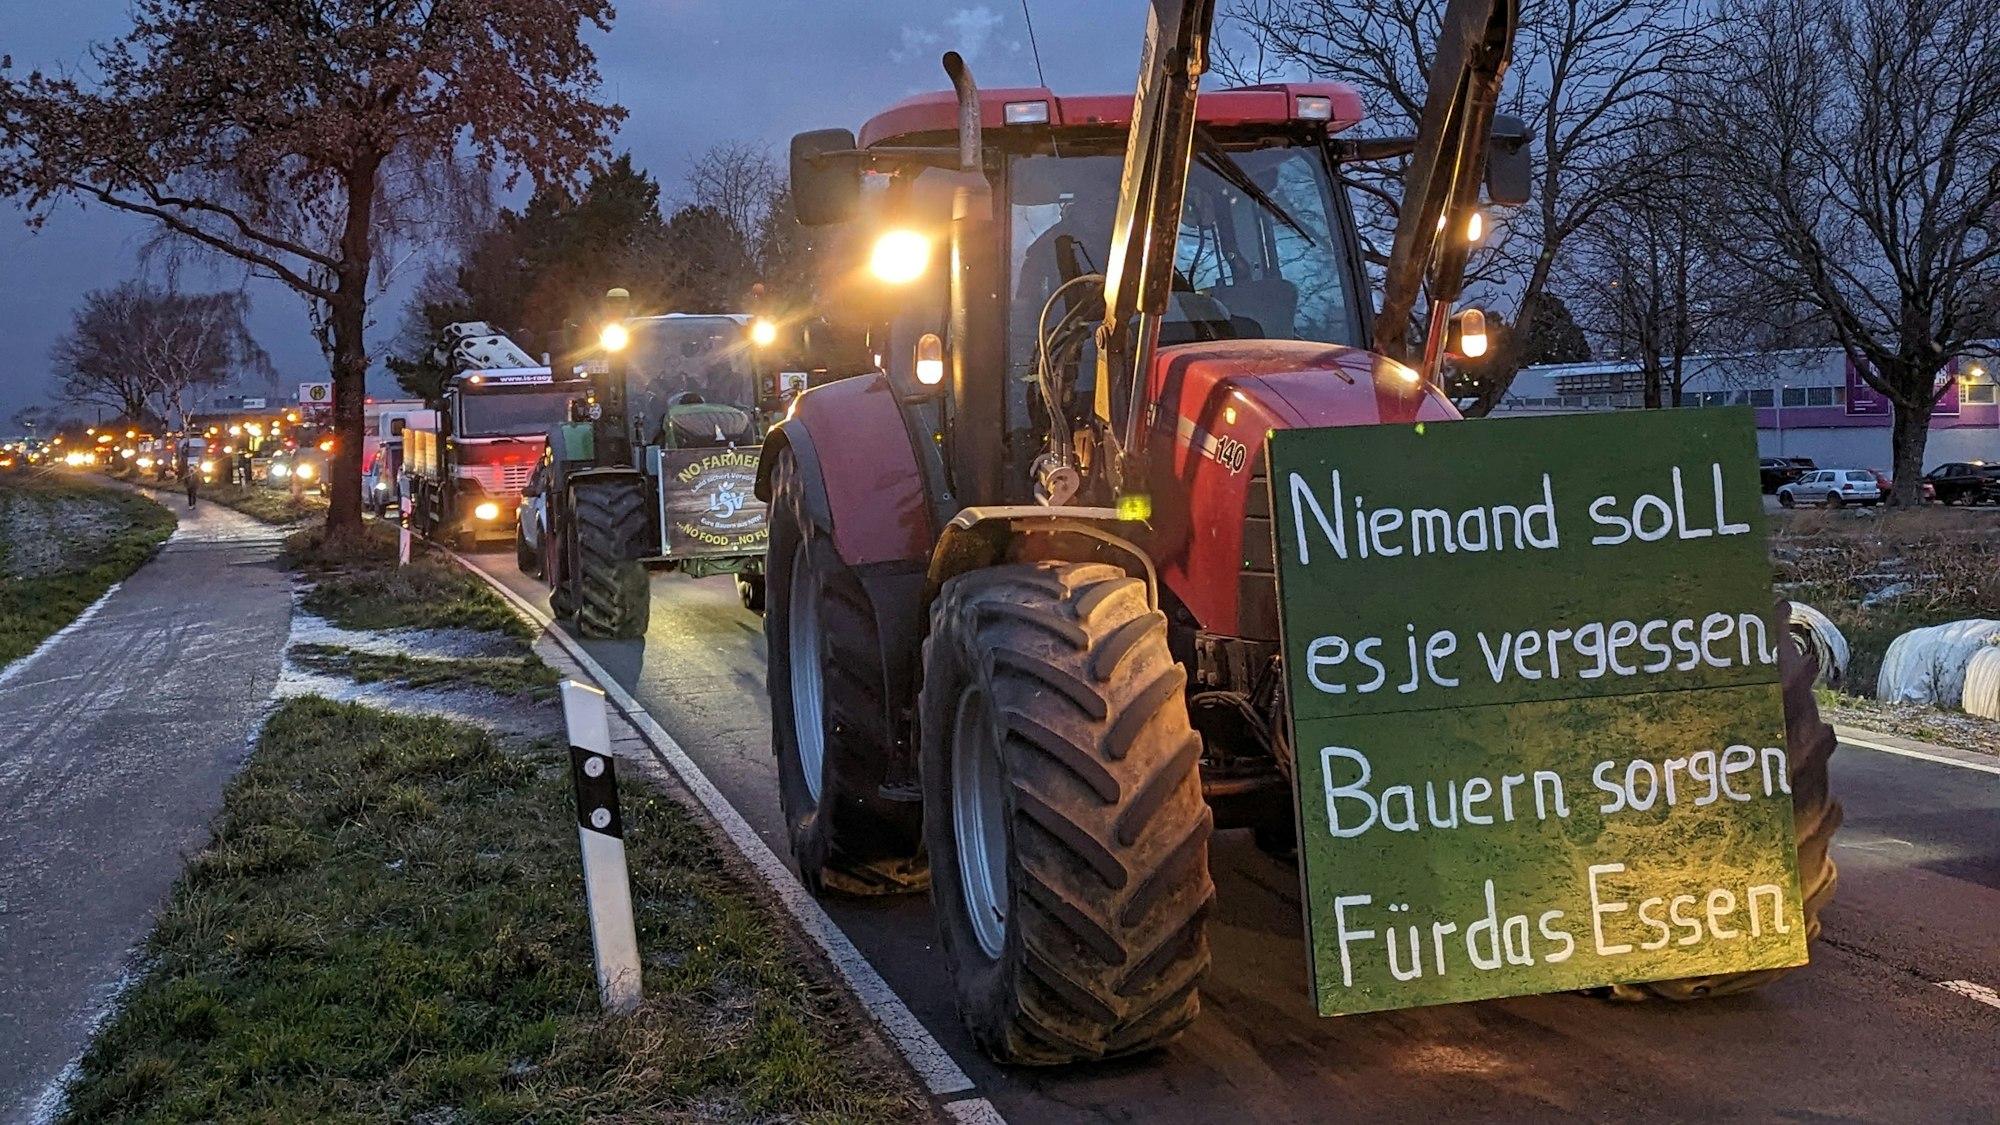 Auf dem Foto ist ein Traktor zu sehen. An seinem Kühler ist ein Schild angebracht: „Niemand soll es je vergessen: Bauern sorgen für das Essen“ ist darauf zu lesen.